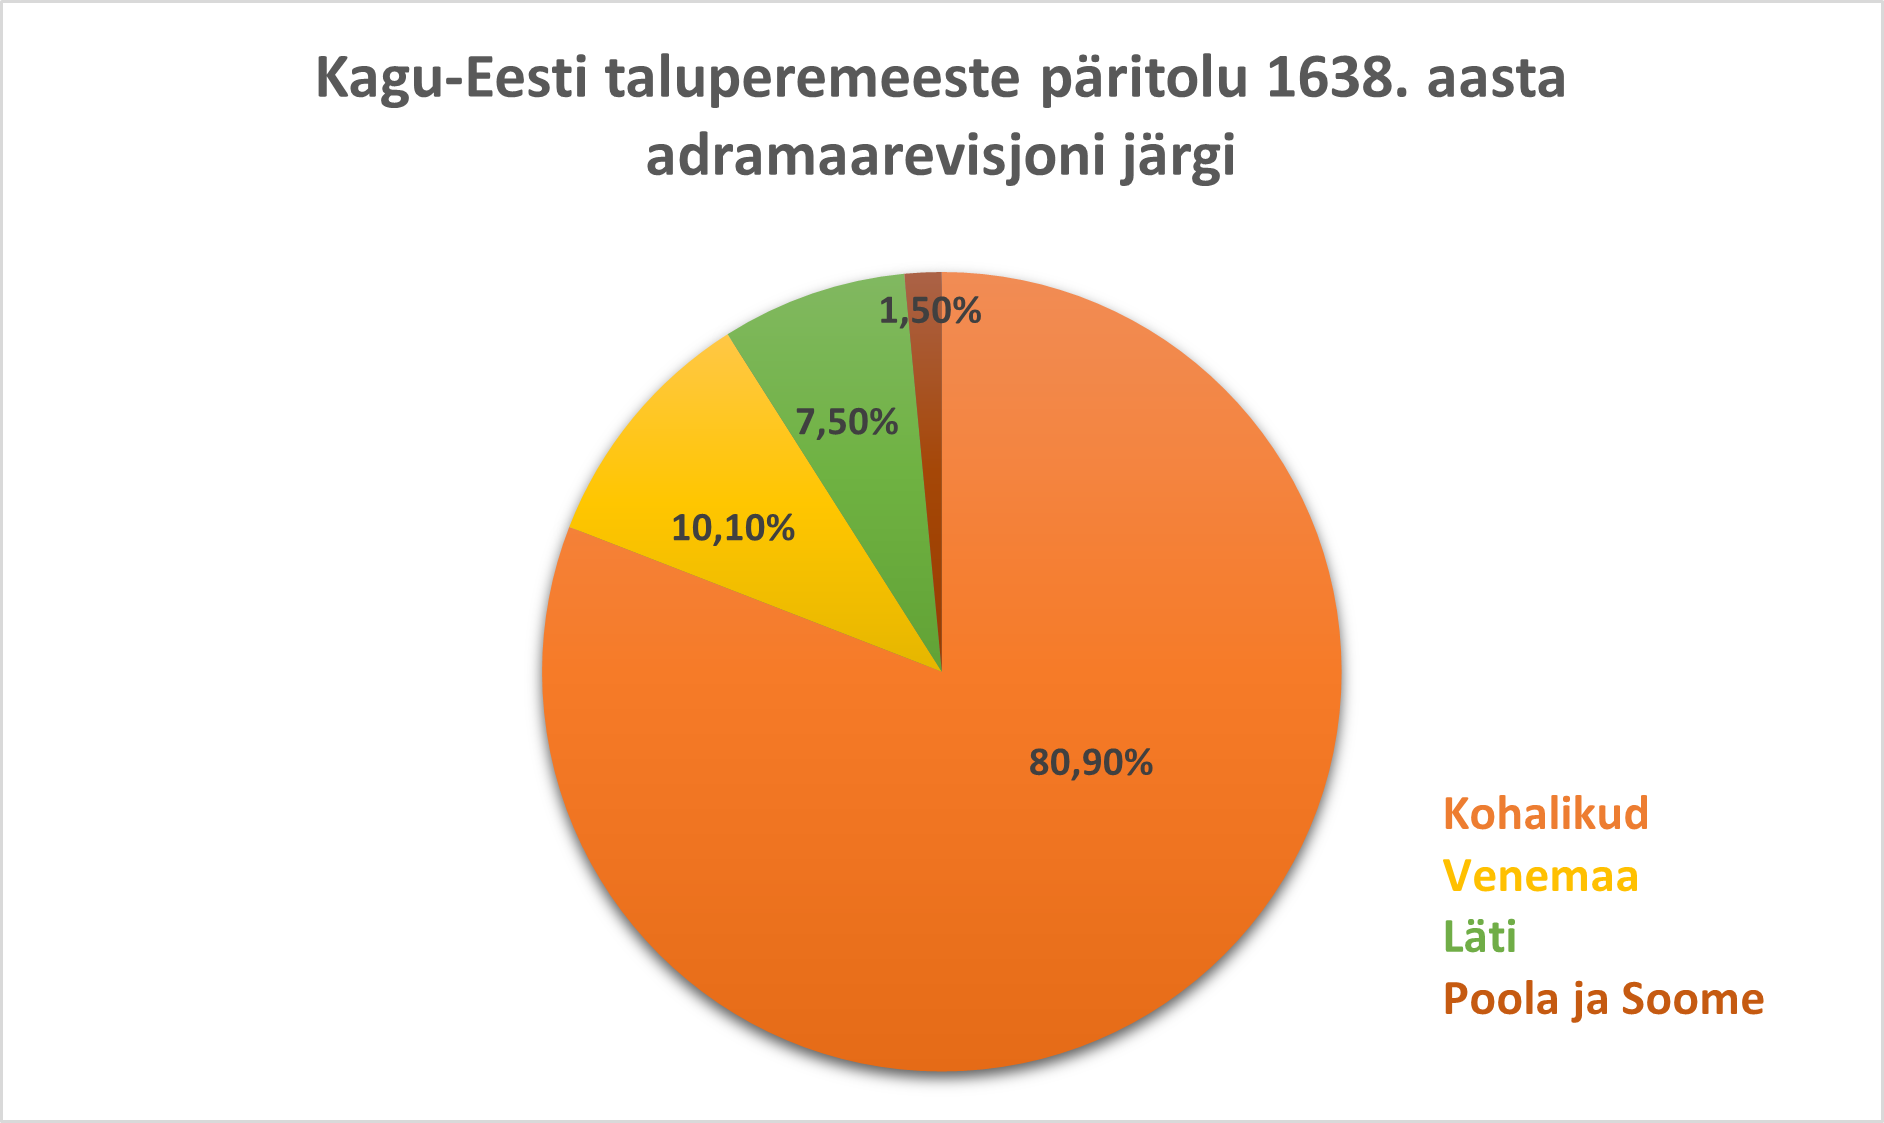 Kagu-Eesti taluperemeeste päritolu 1638. aasta adramaarevisjoni järgi.